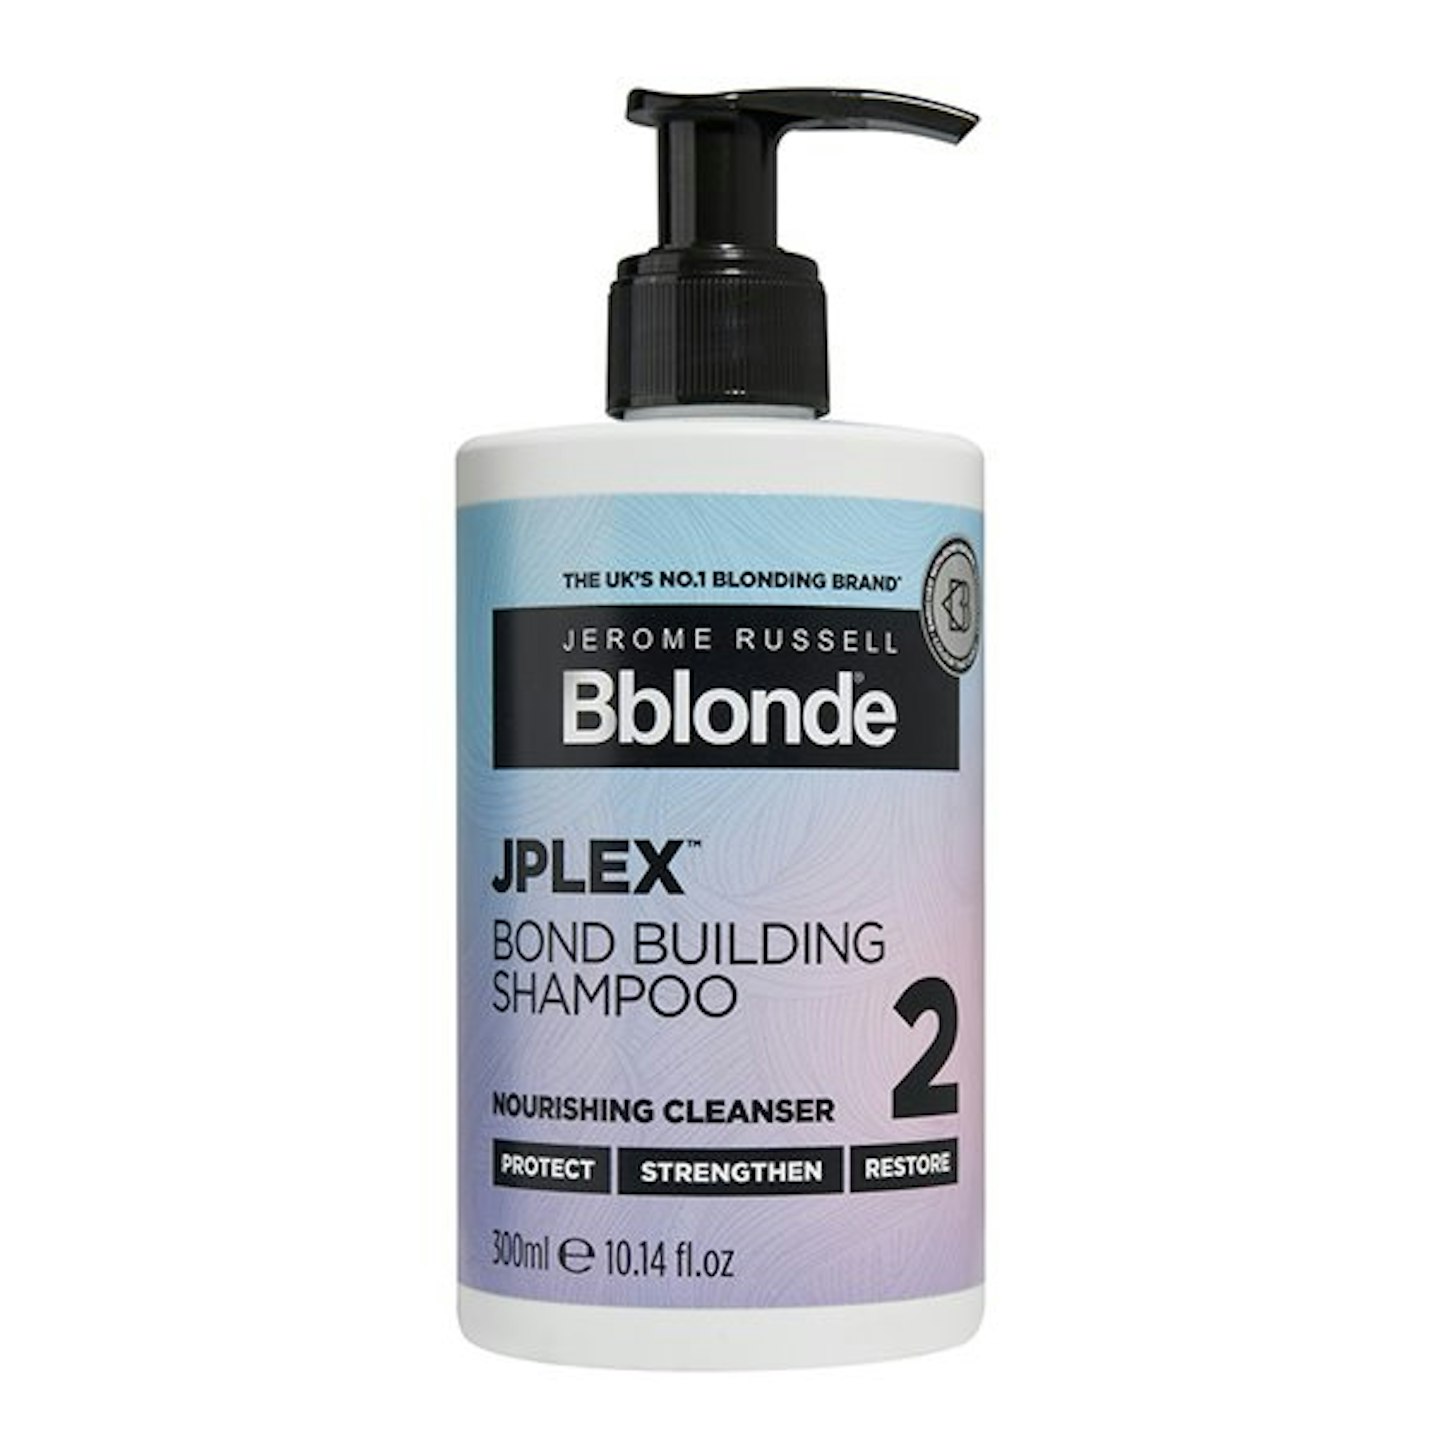 Jerome Russell Bblonde JPLEX 2 Bond Shampoo